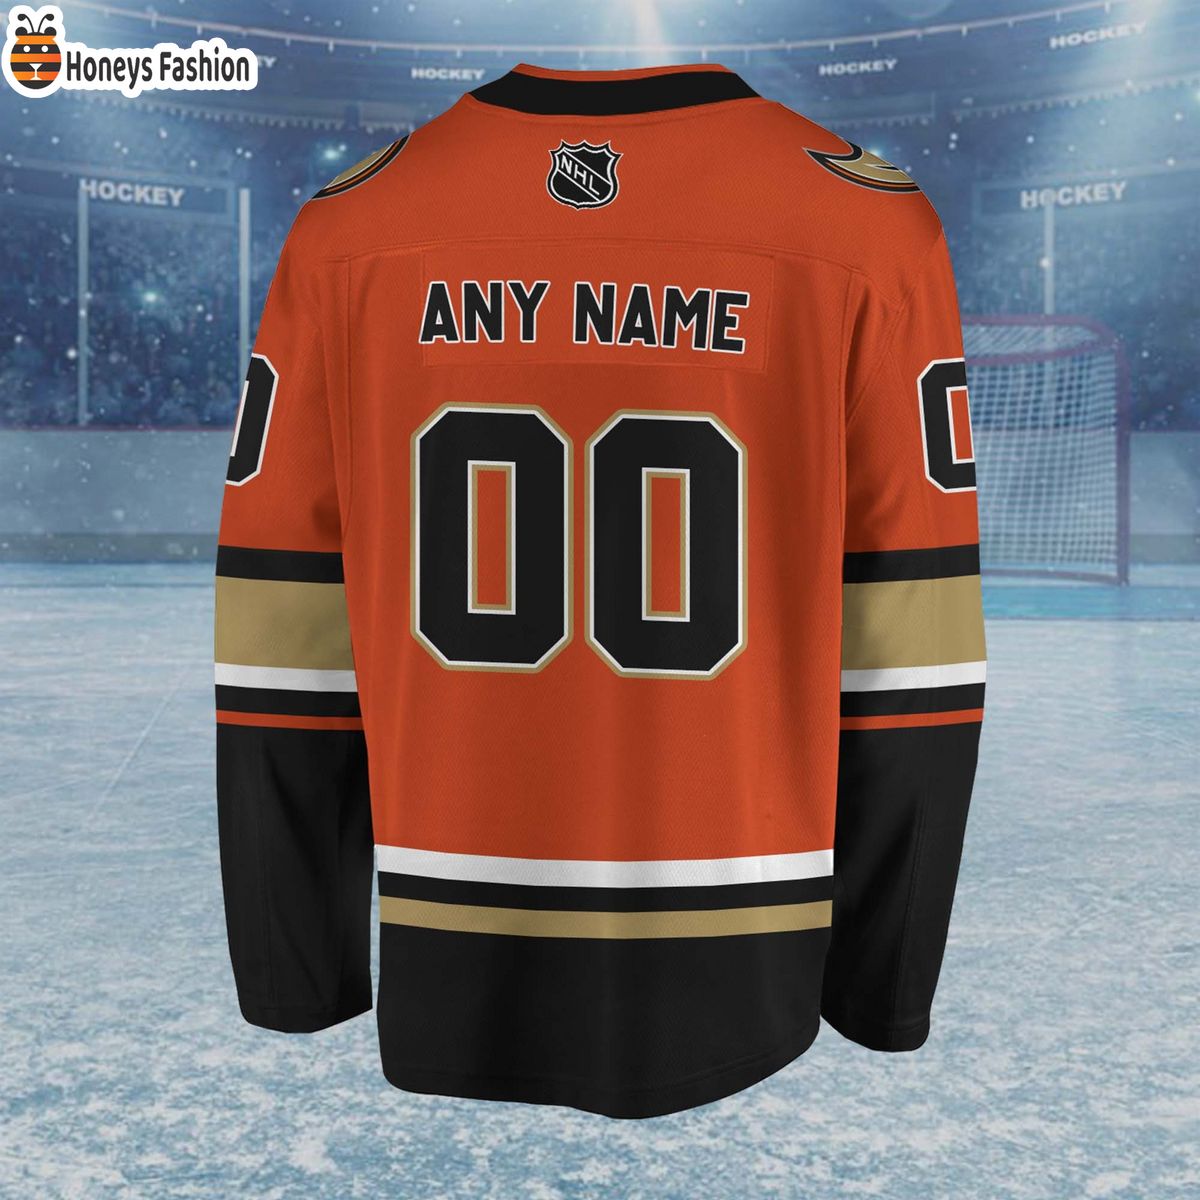 Anaheim Ducks Personalized Hockey Jersey